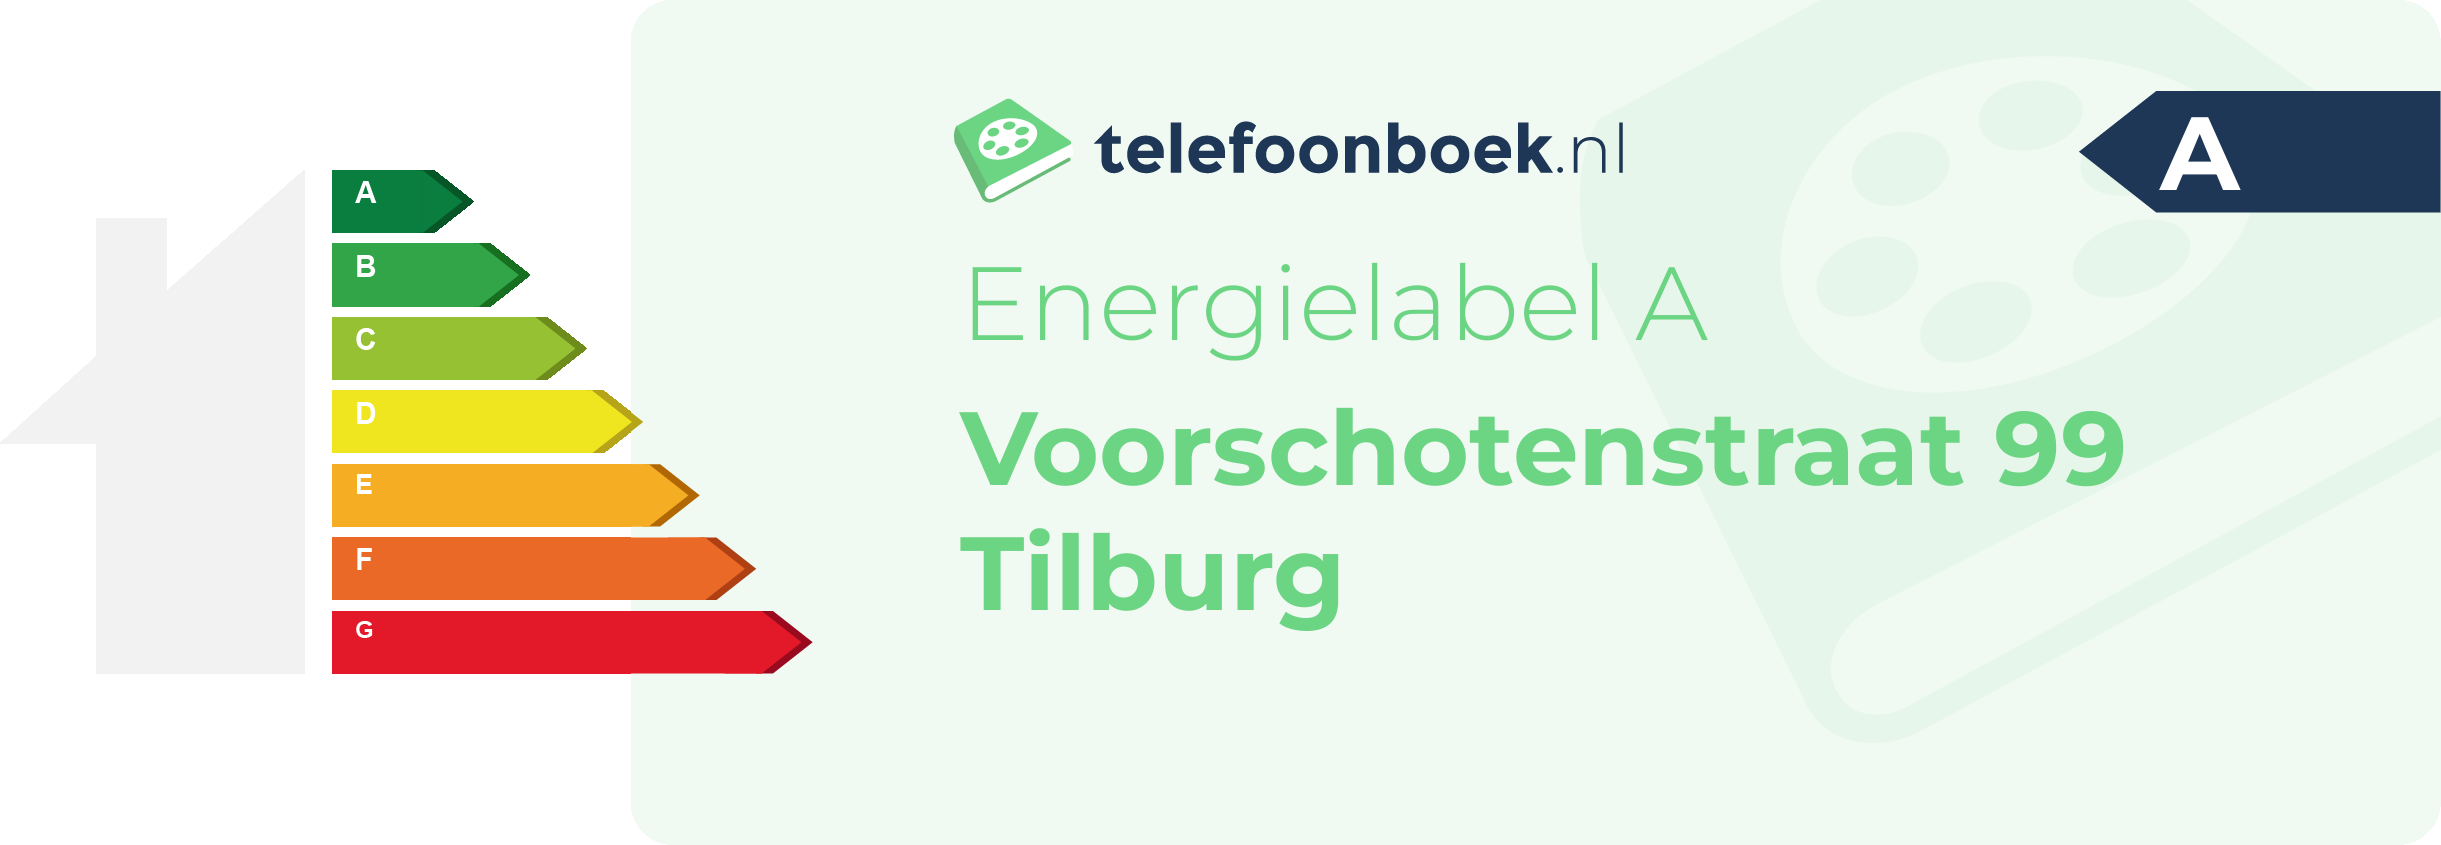 Energielabel Voorschotenstraat 99 Tilburg